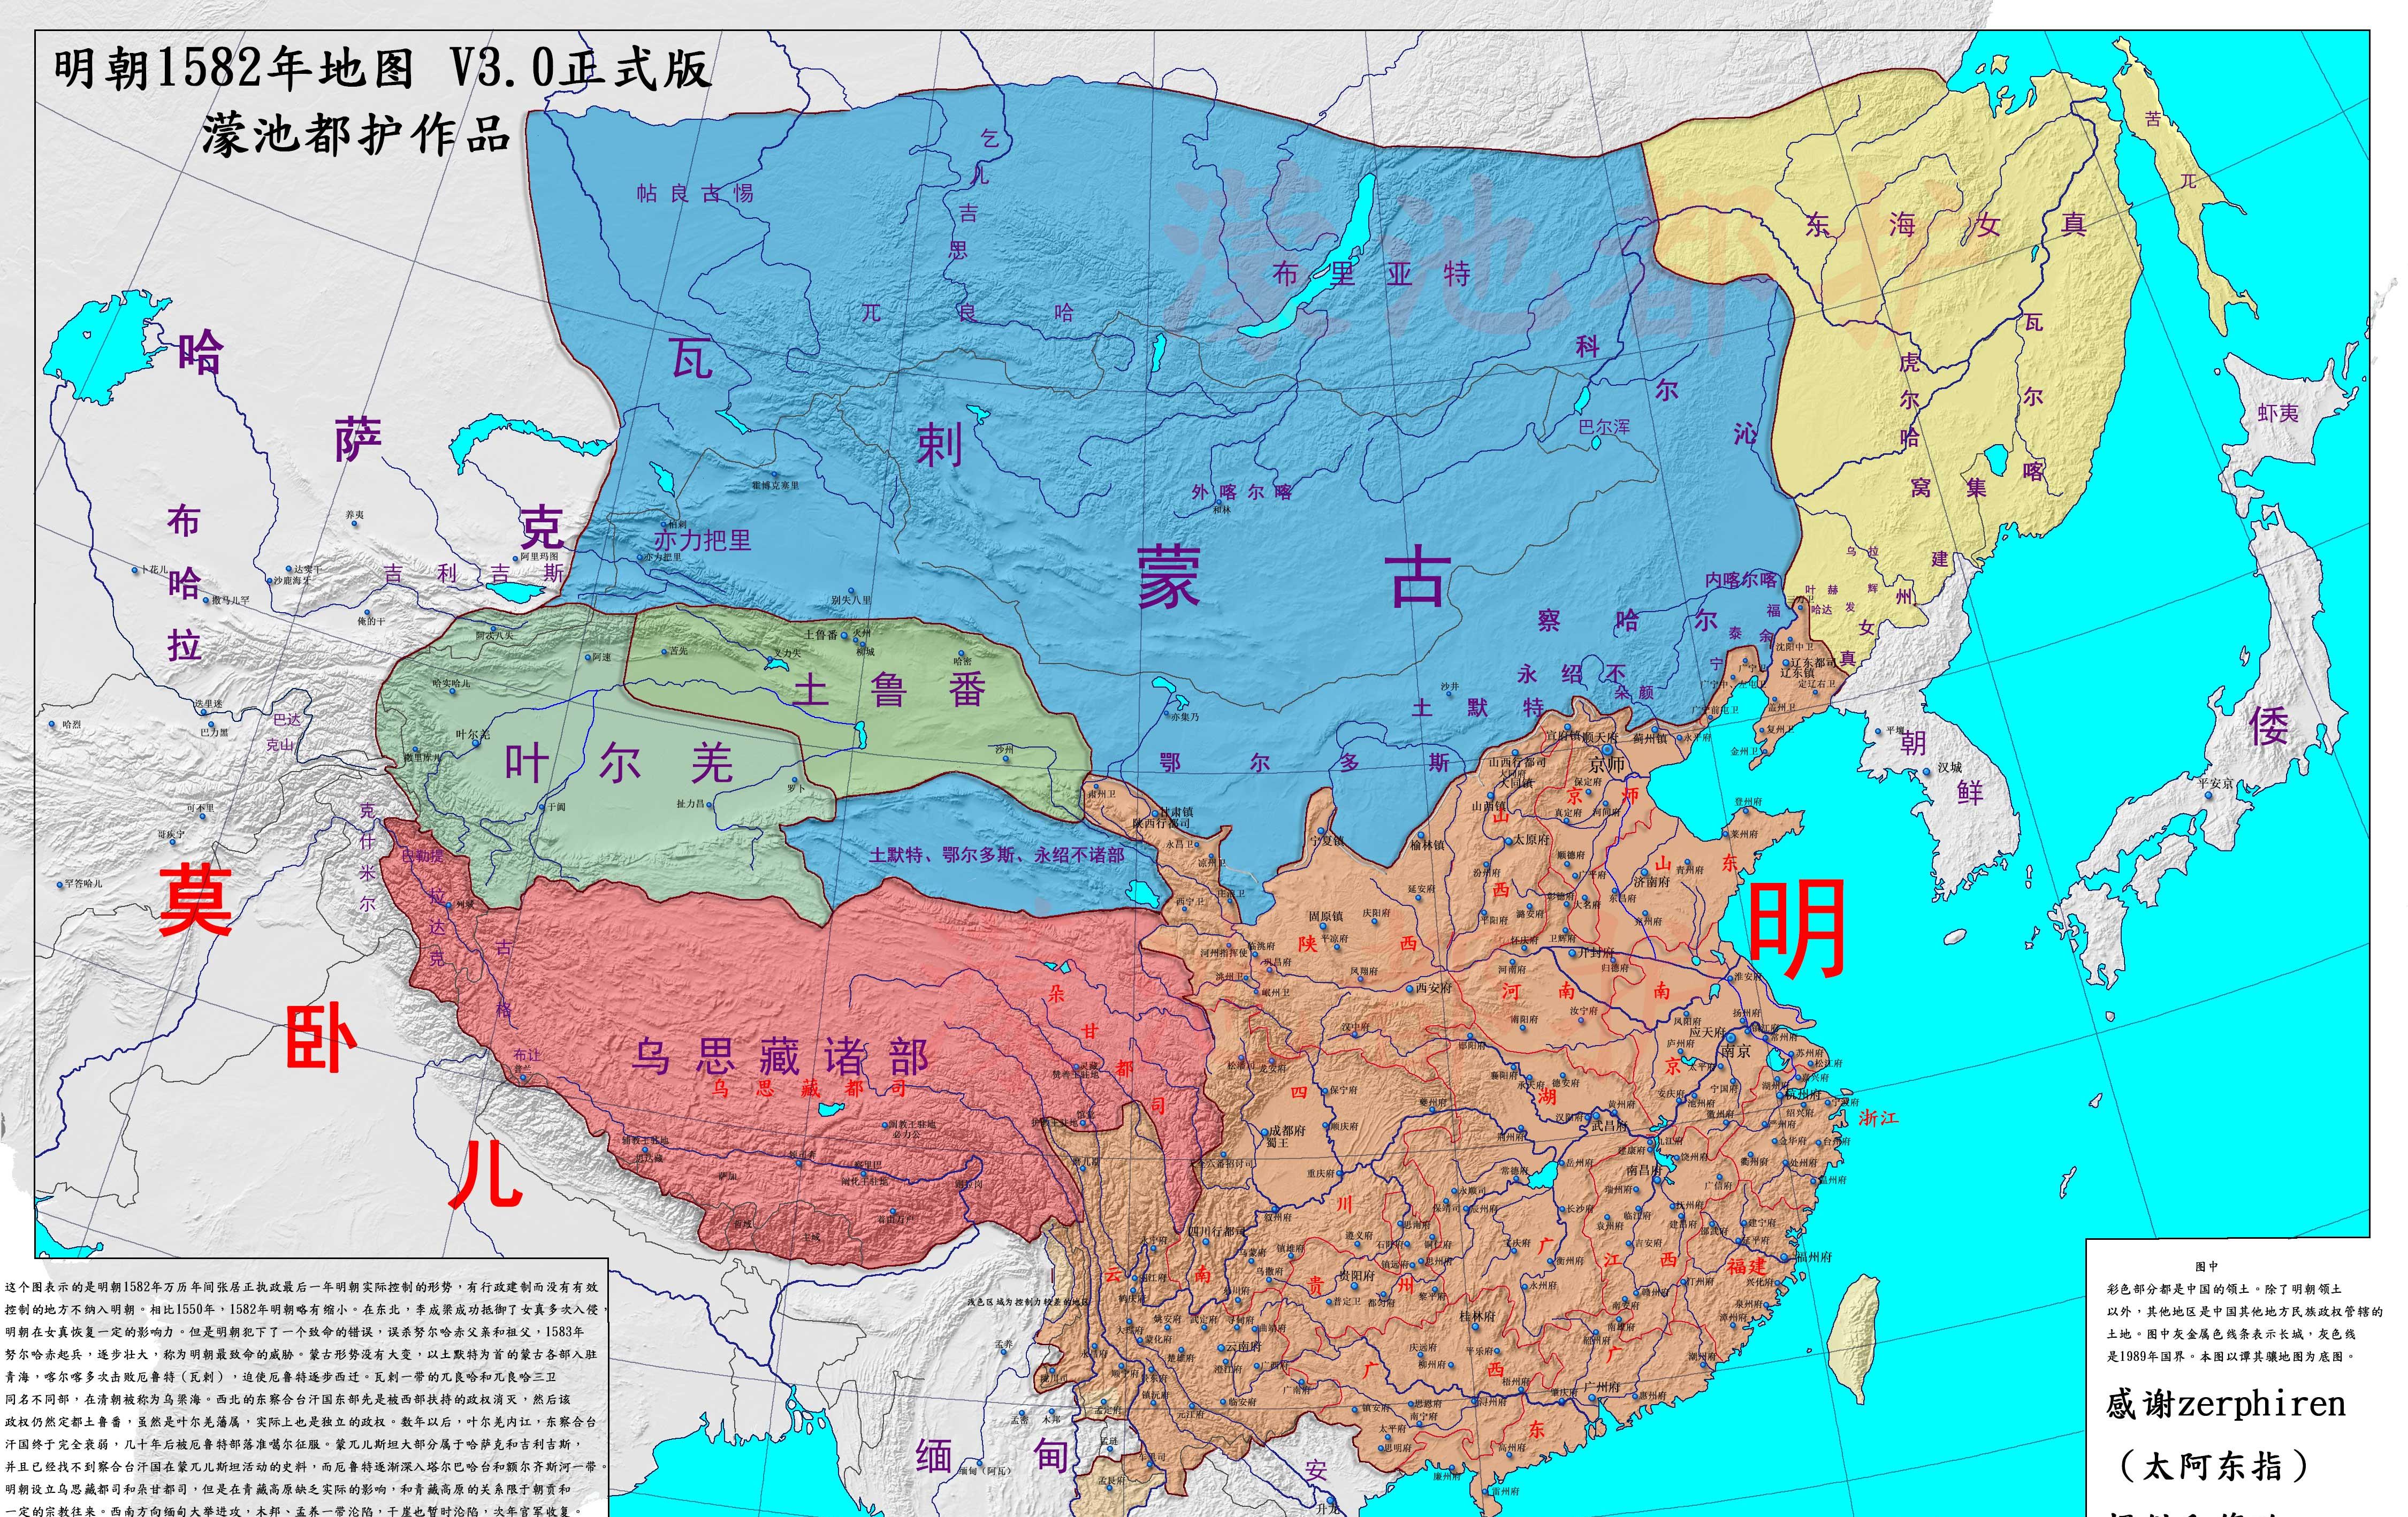 万历时期版图1616年的明朝版图崇祯年间,东亚大陆的局势迅速变化.